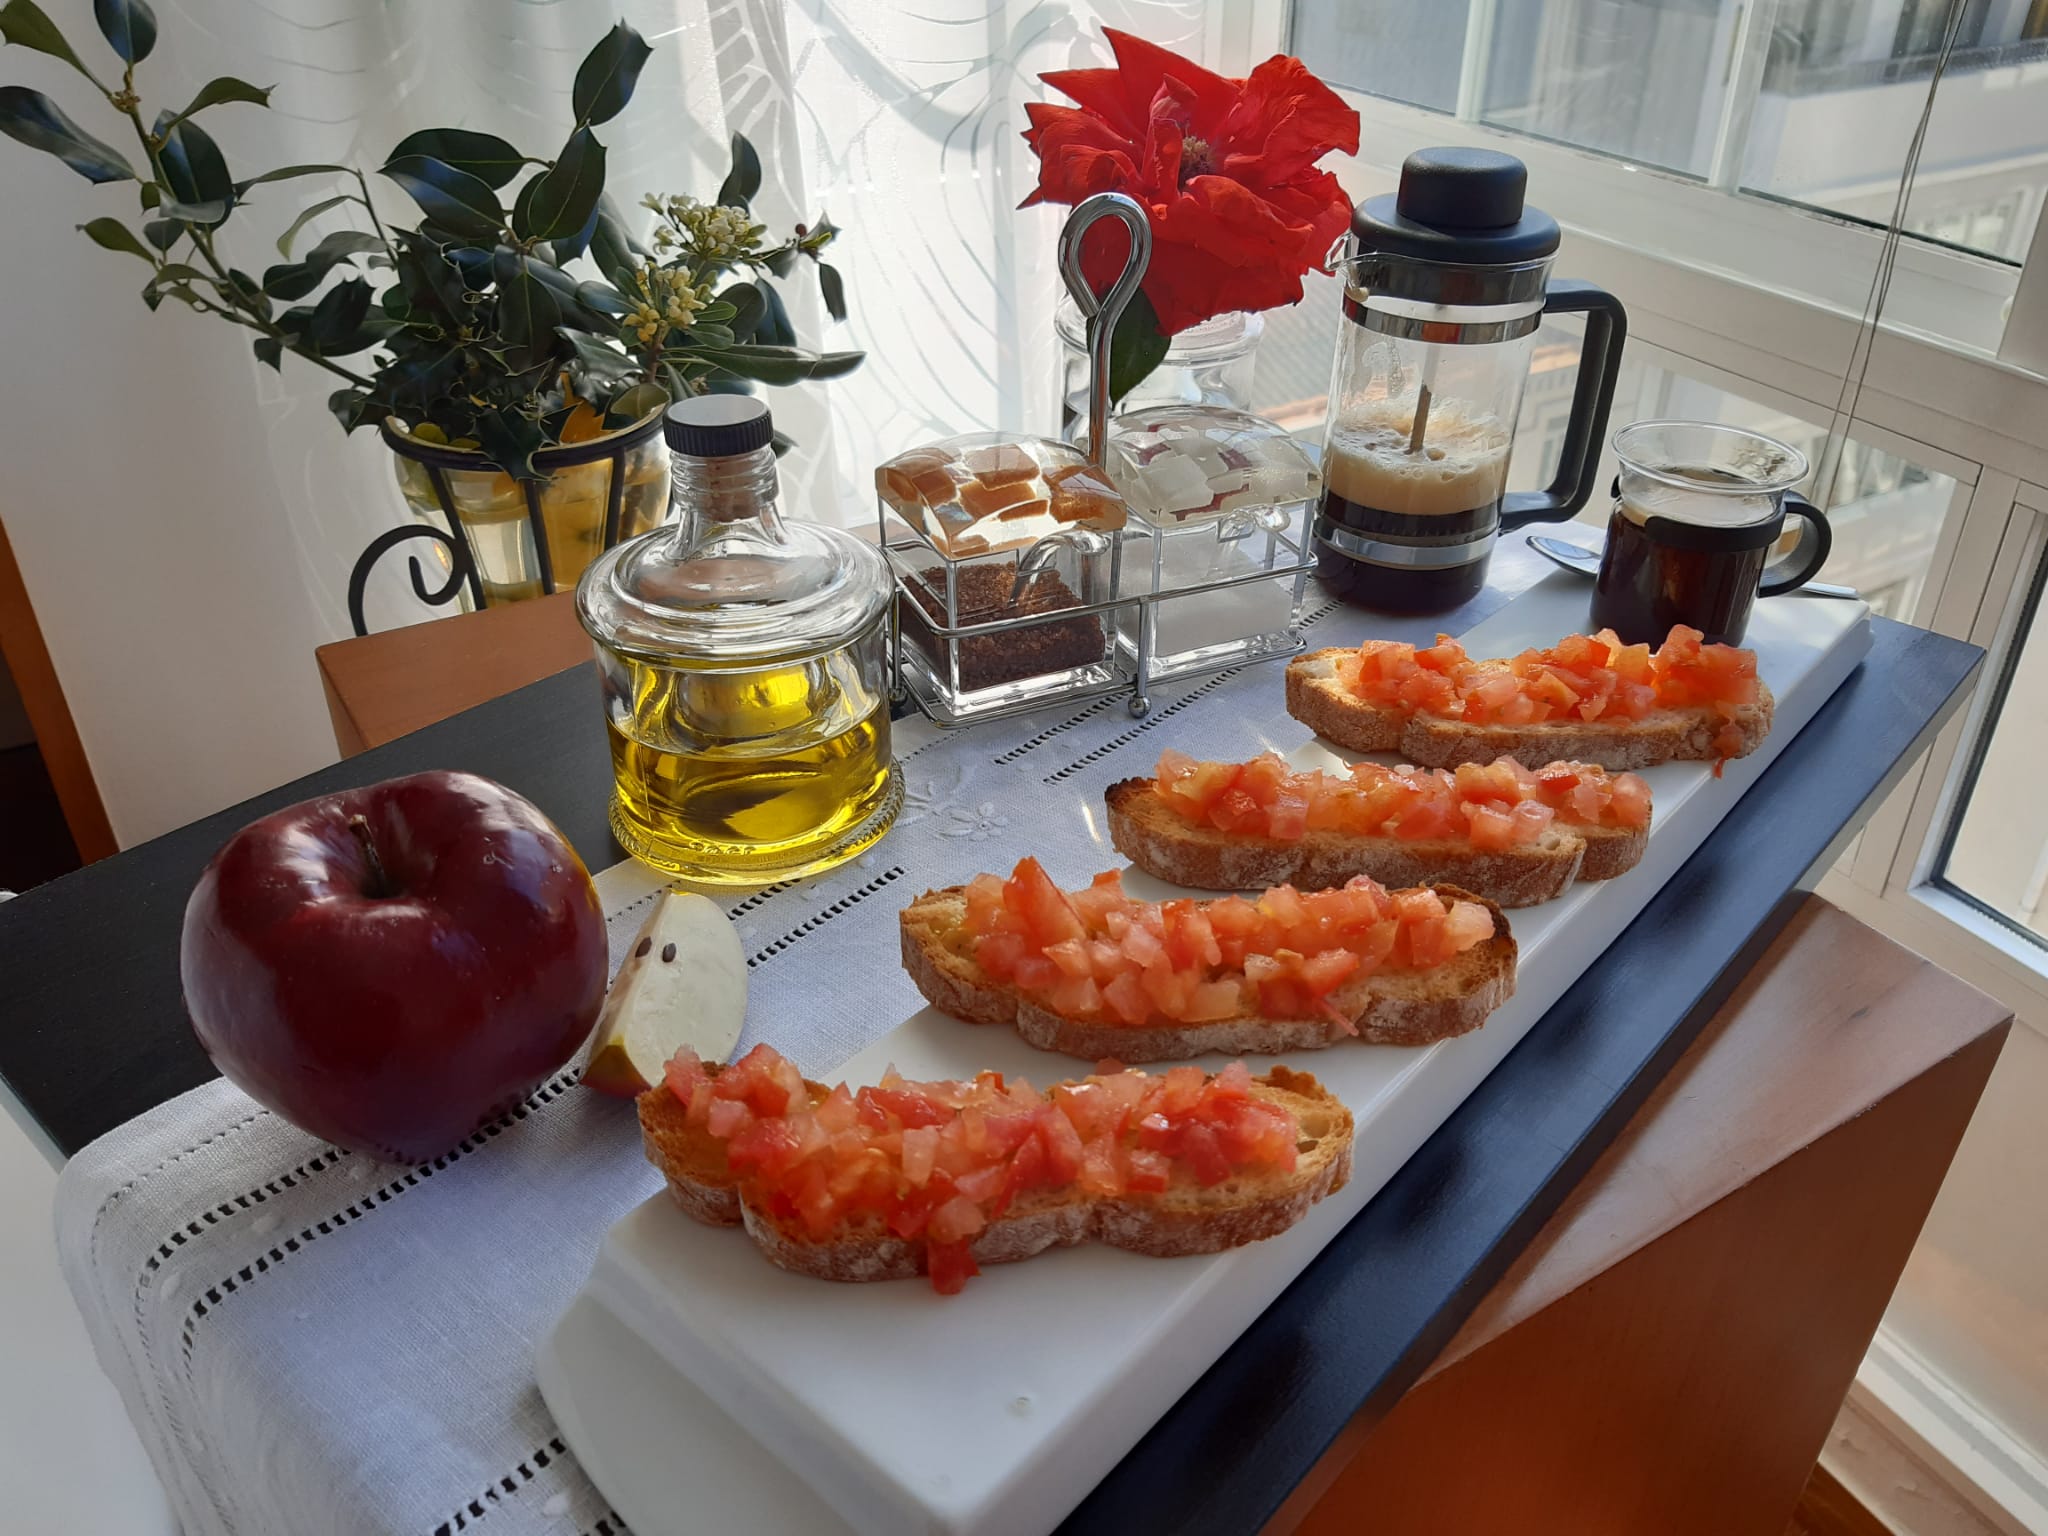 desayuno-pan-tomate-restaurante-a-bascula-arteixo